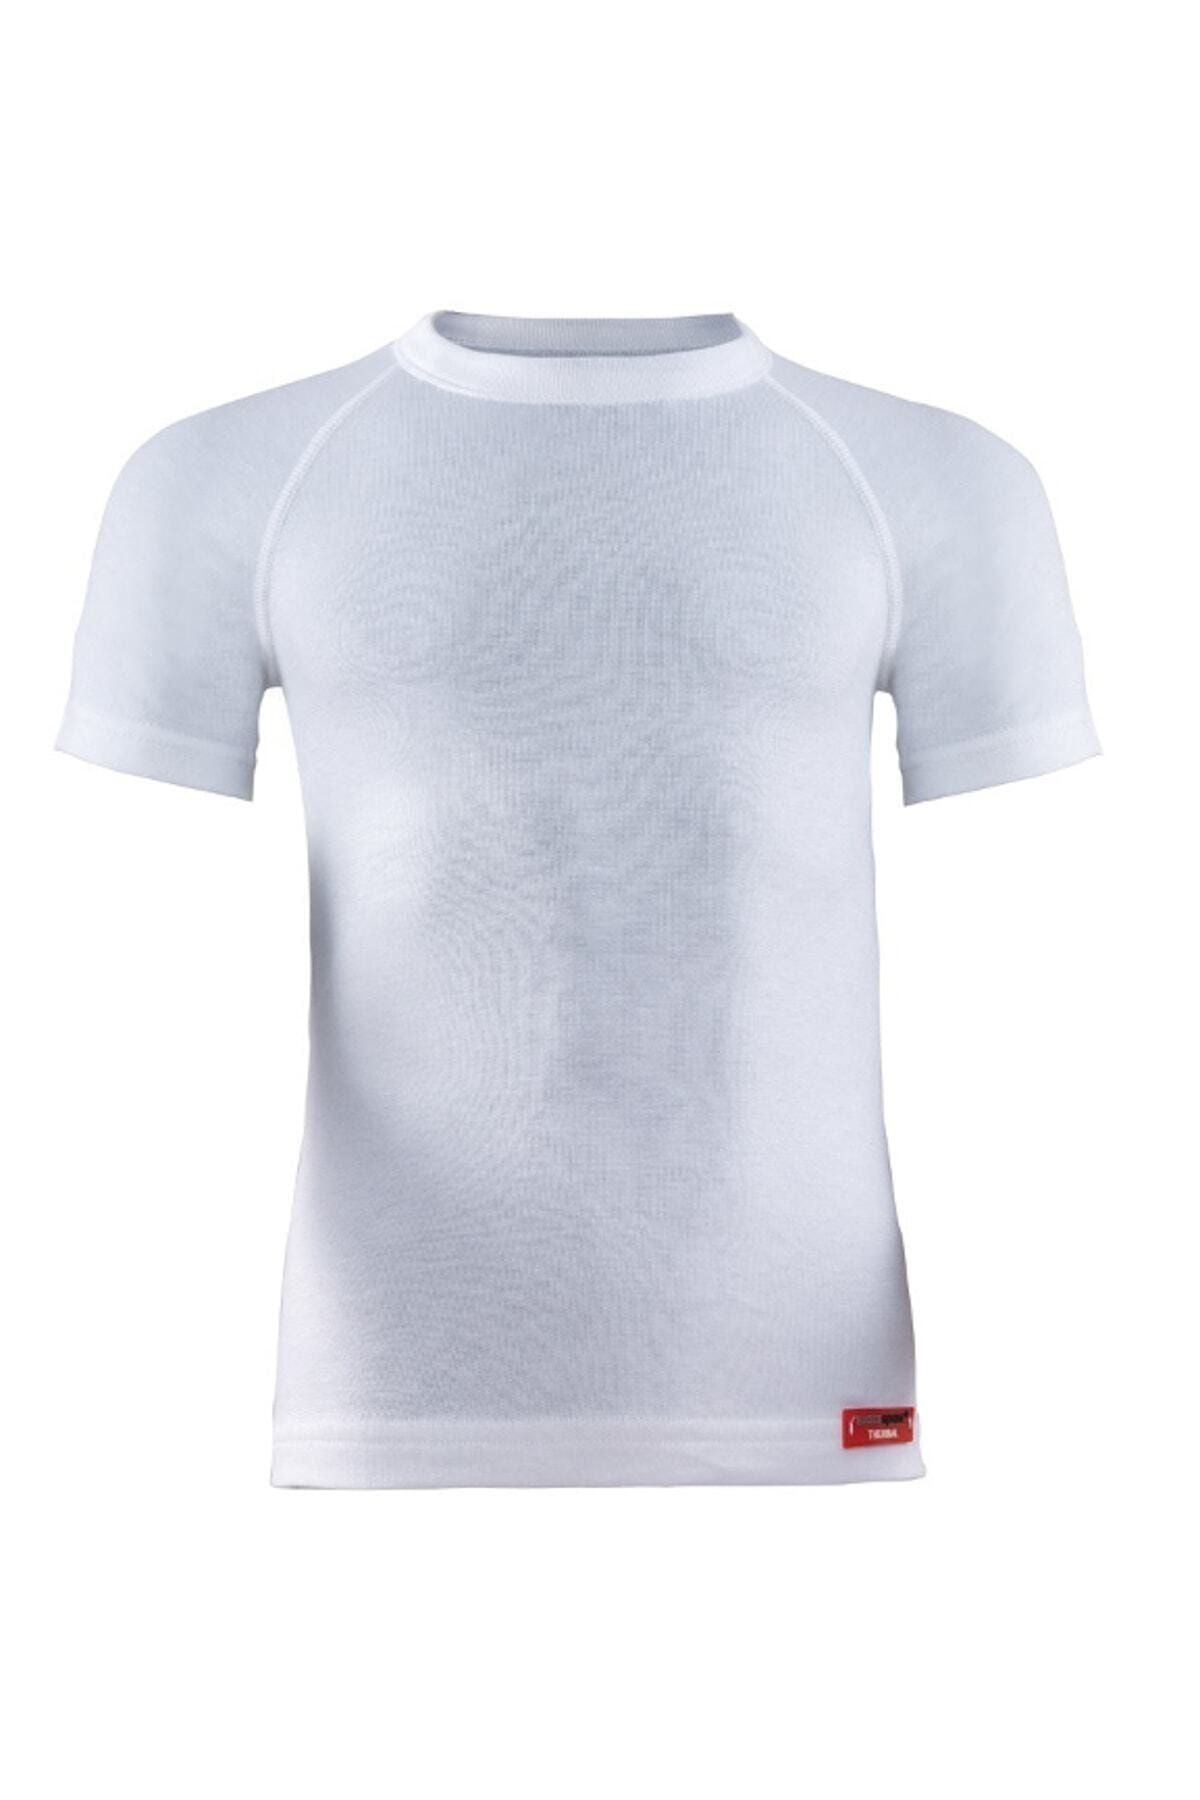 Unisex Çocuk Beyaz Termal 2. Seviye T-shirt_0